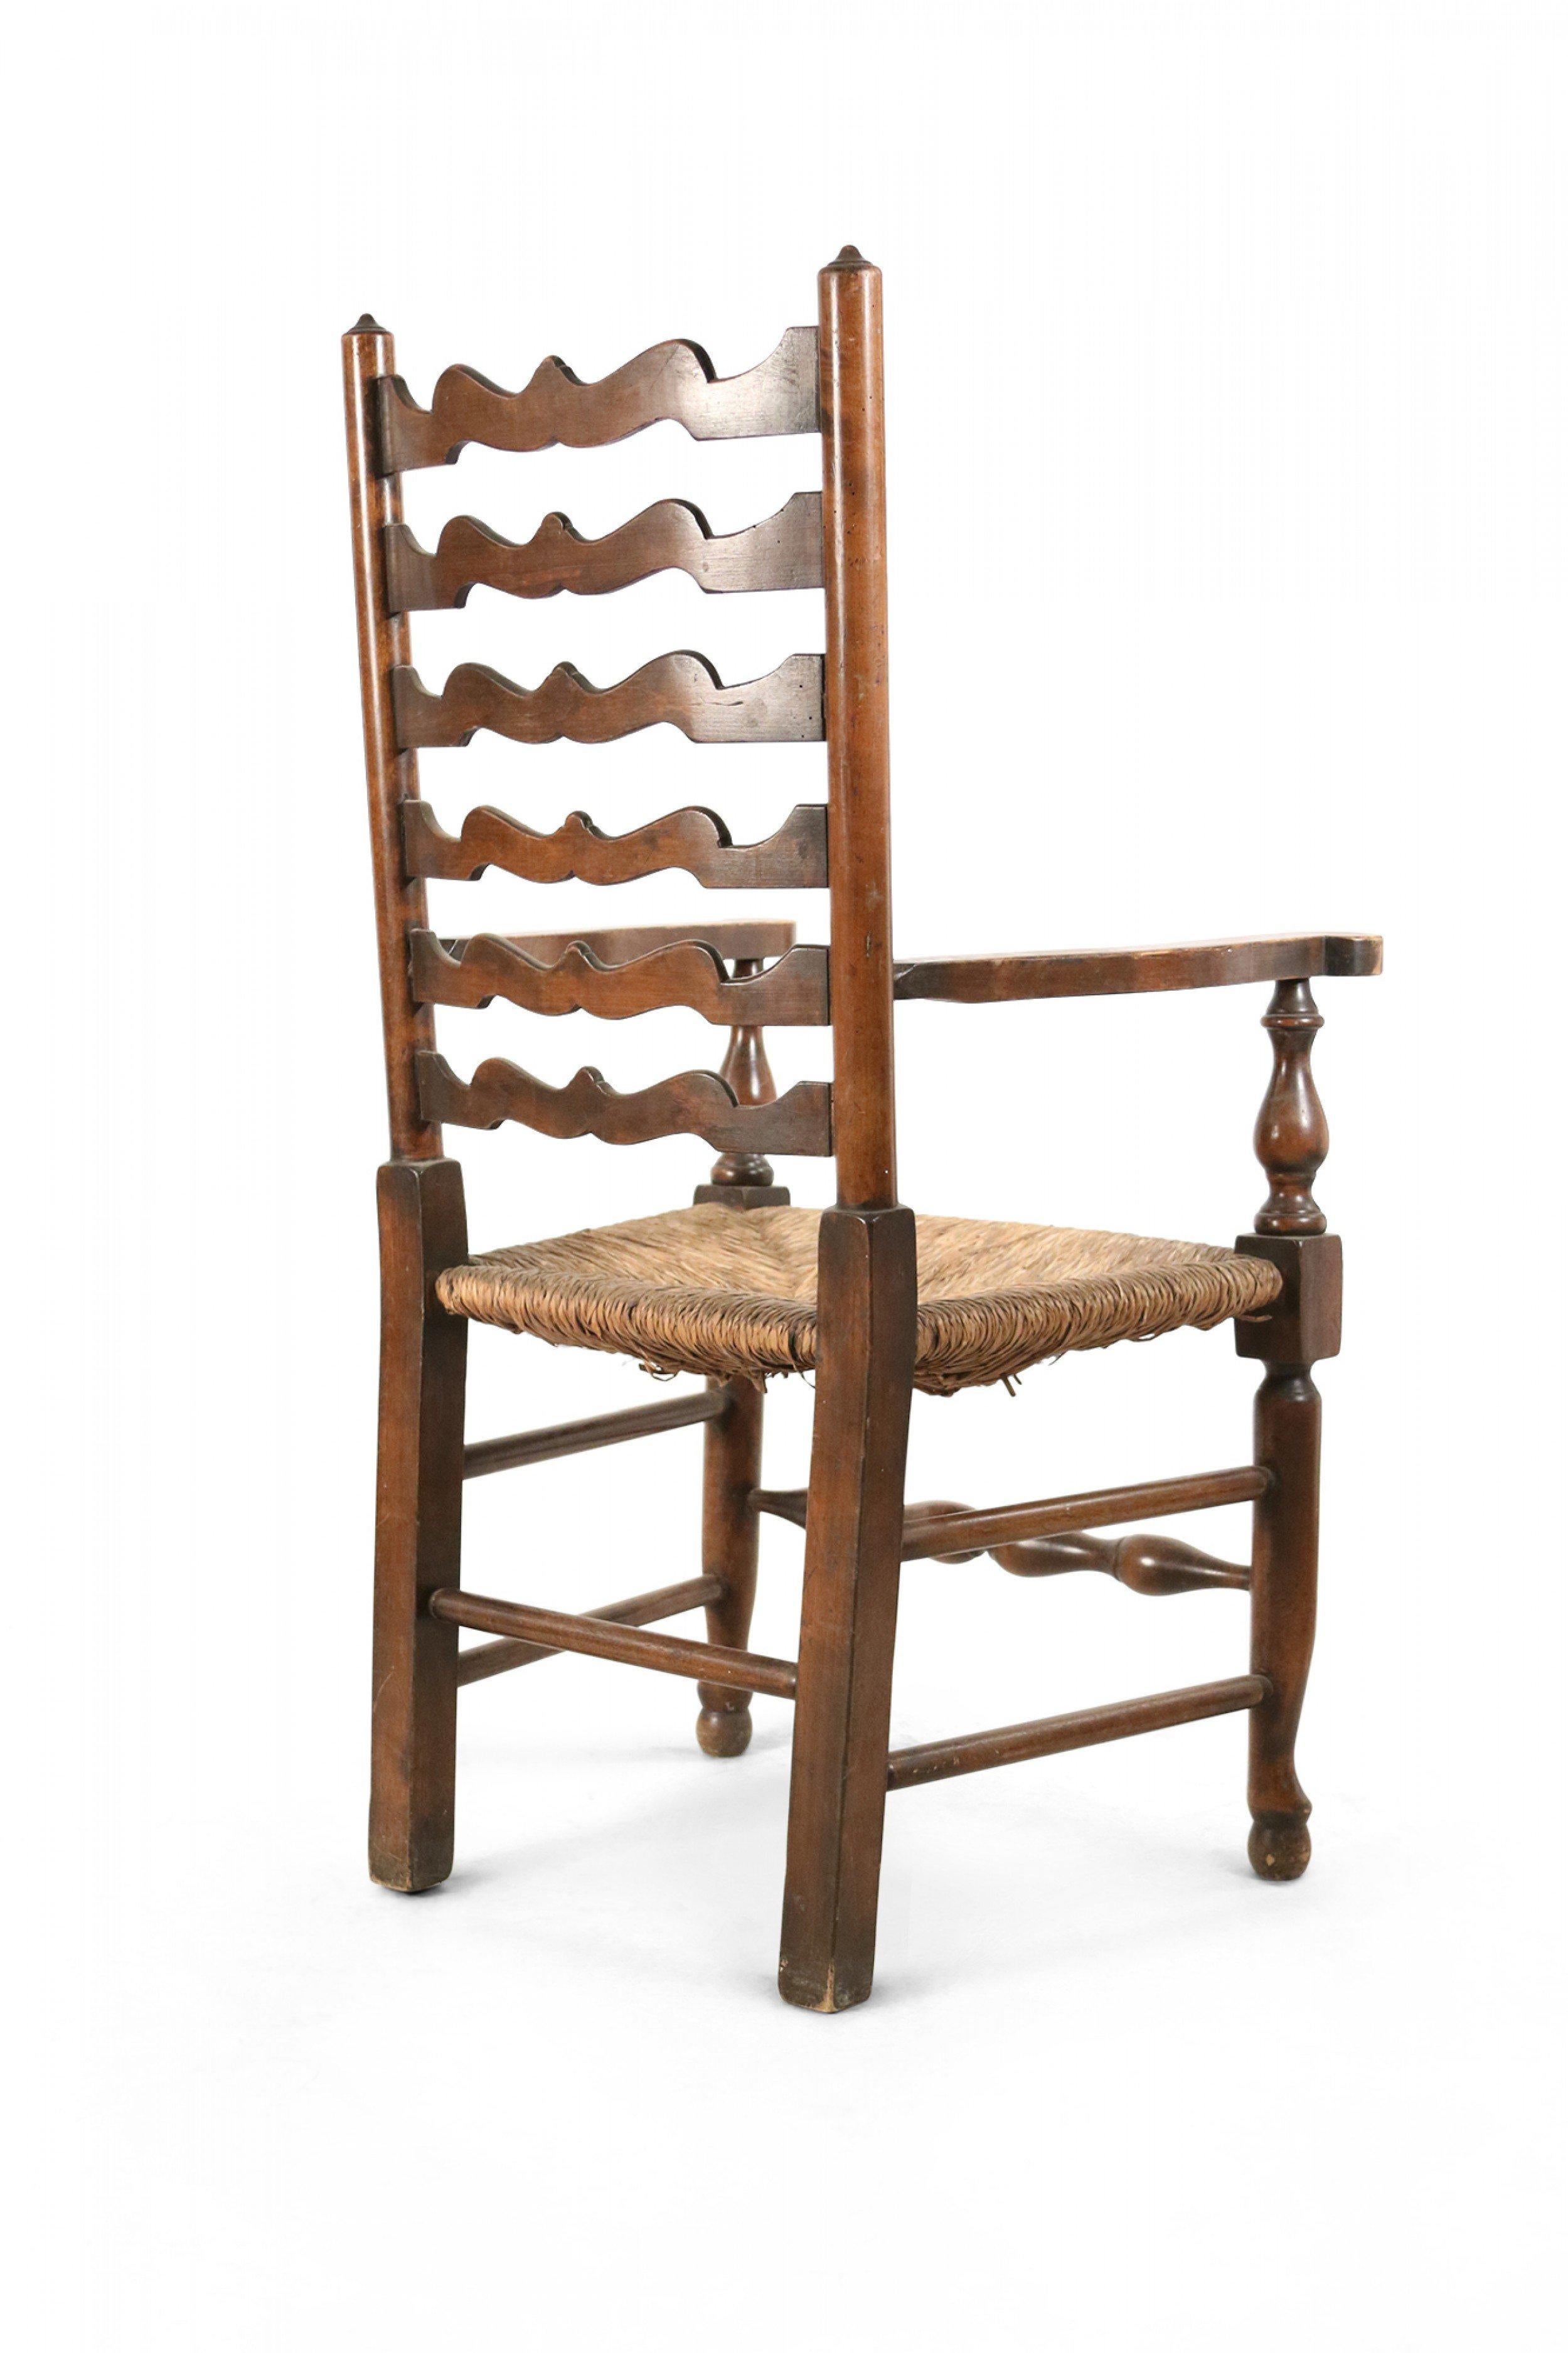 American Country Chaise d'appoint de style rustique en bois avec un dossier en échelle festonnée, une assise en jonc tressé et un châssis en forme de boîte.
 